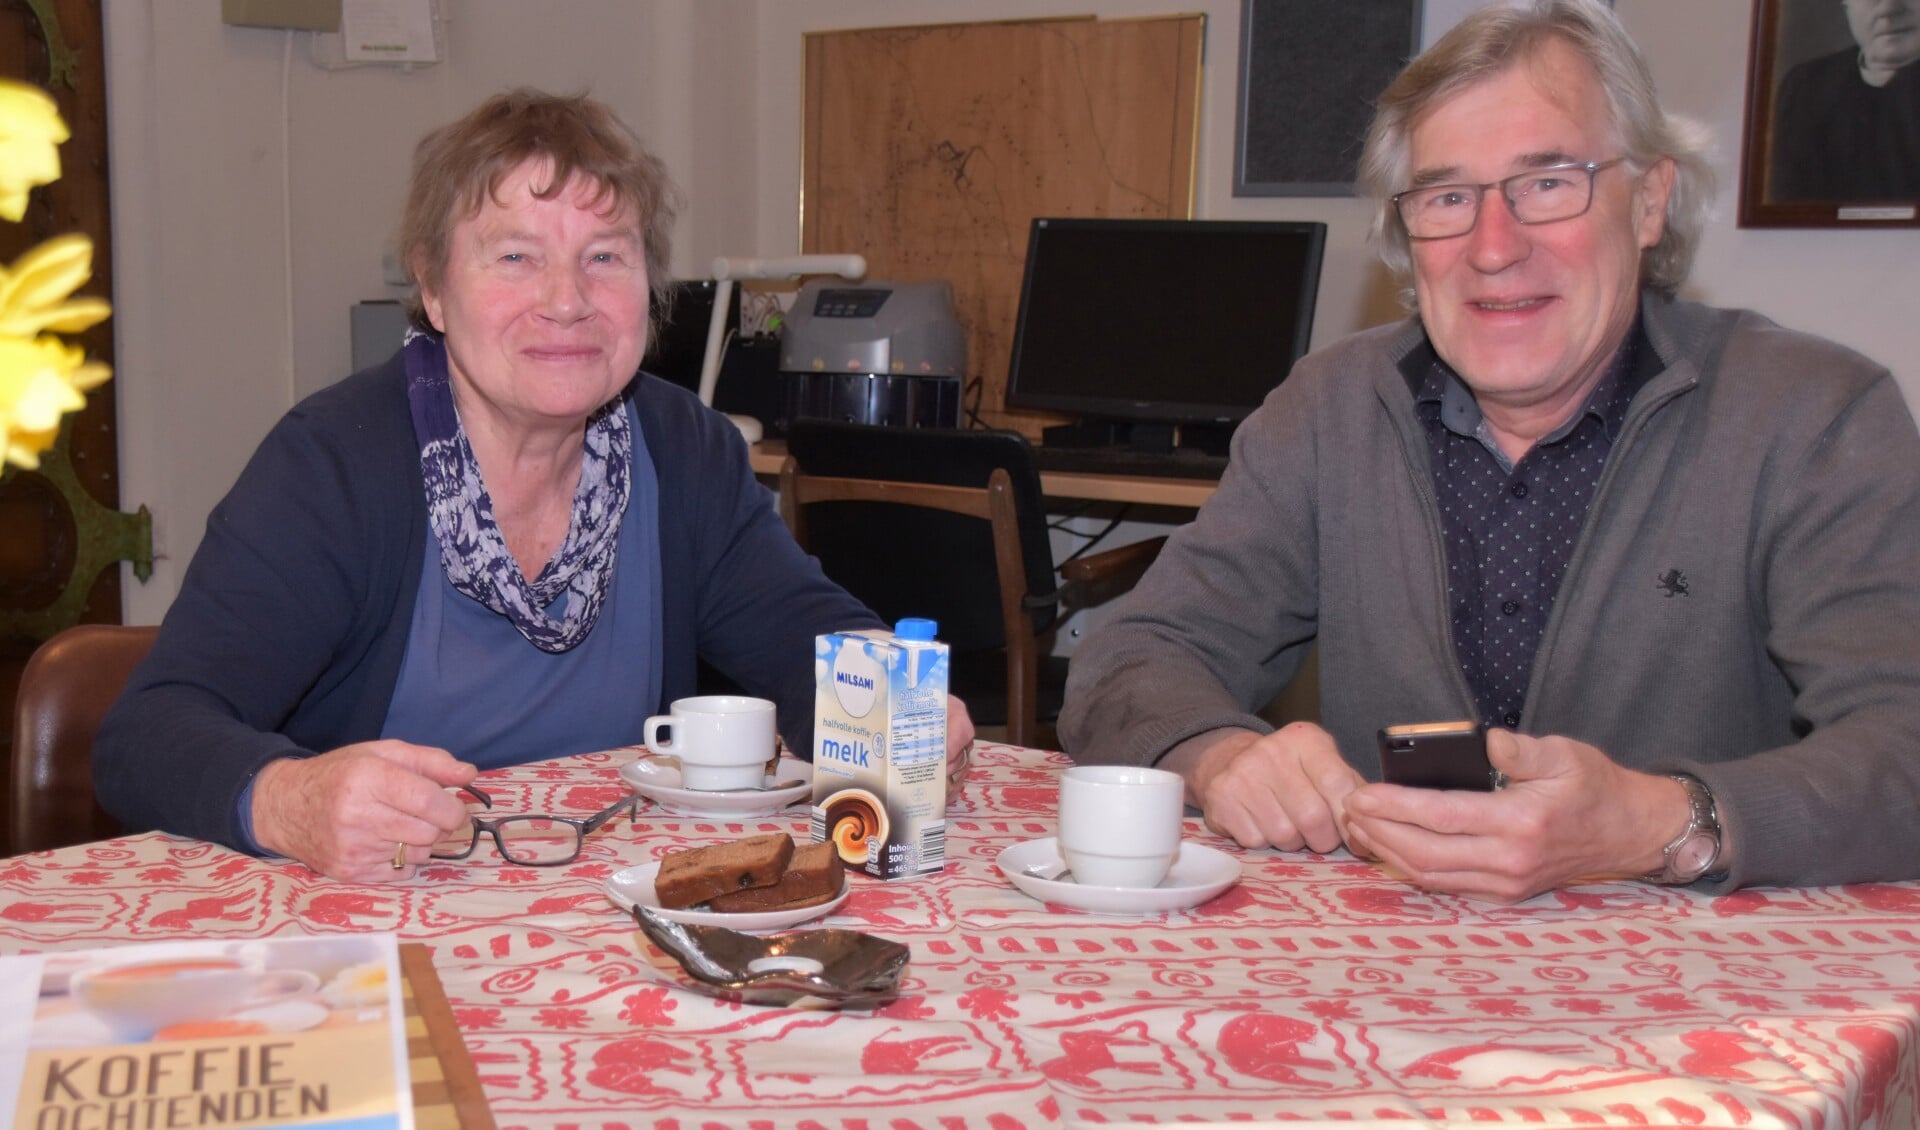 Trees Schut en Gerrit Jan Temmink zijn de kartrekkers van de koffieochtenden in het Martinushuus. Foto: Alice Rouwhorst